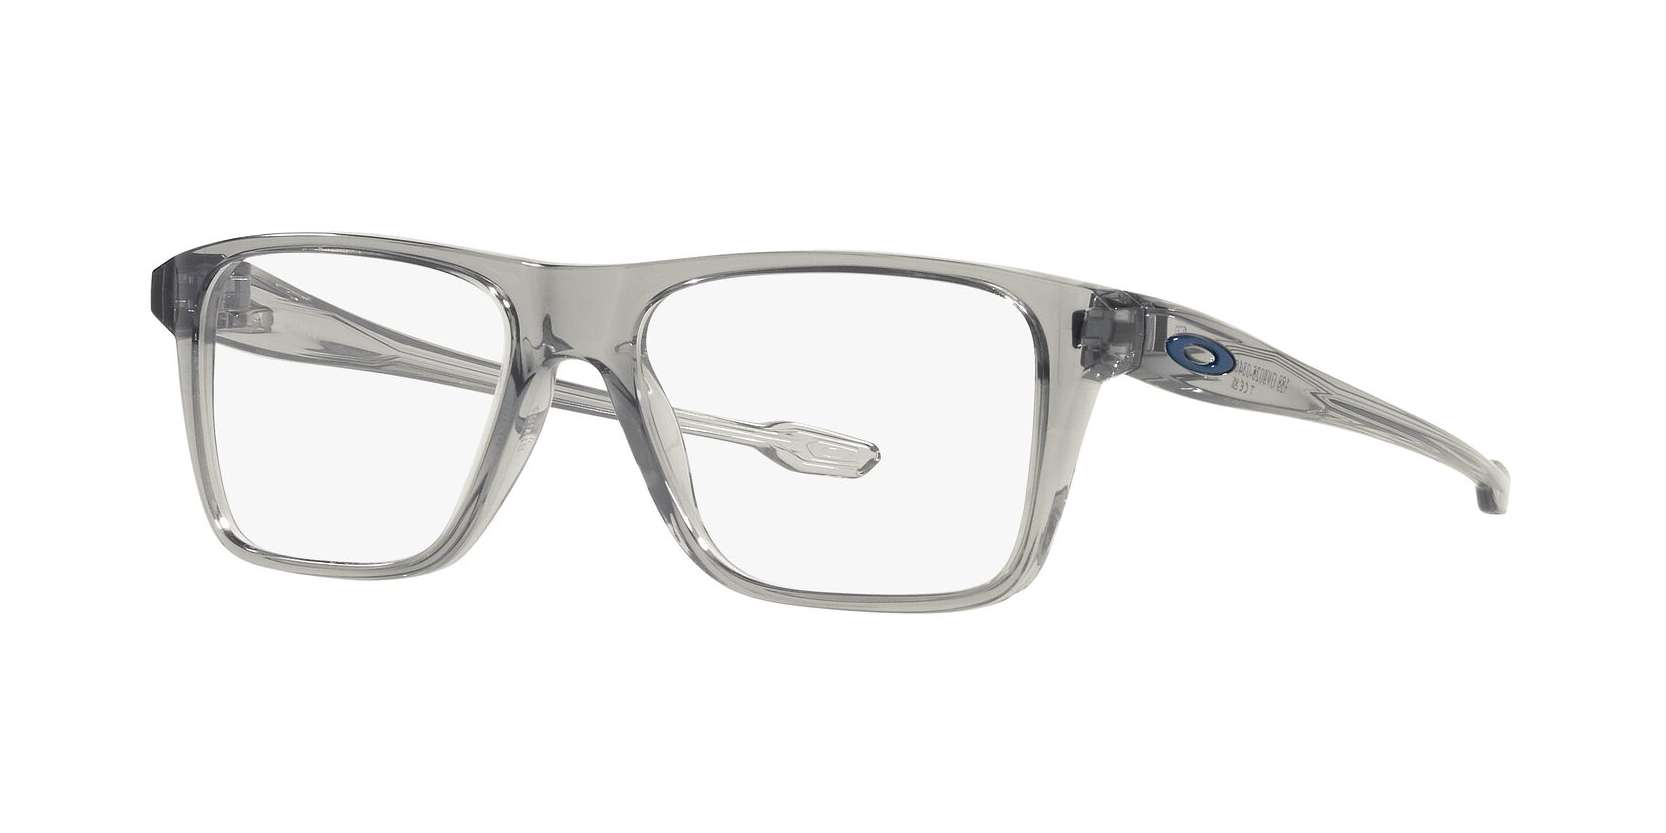 Oakley briller - Bunt fra Oakley - Grå - Plast - Rektangulær - small